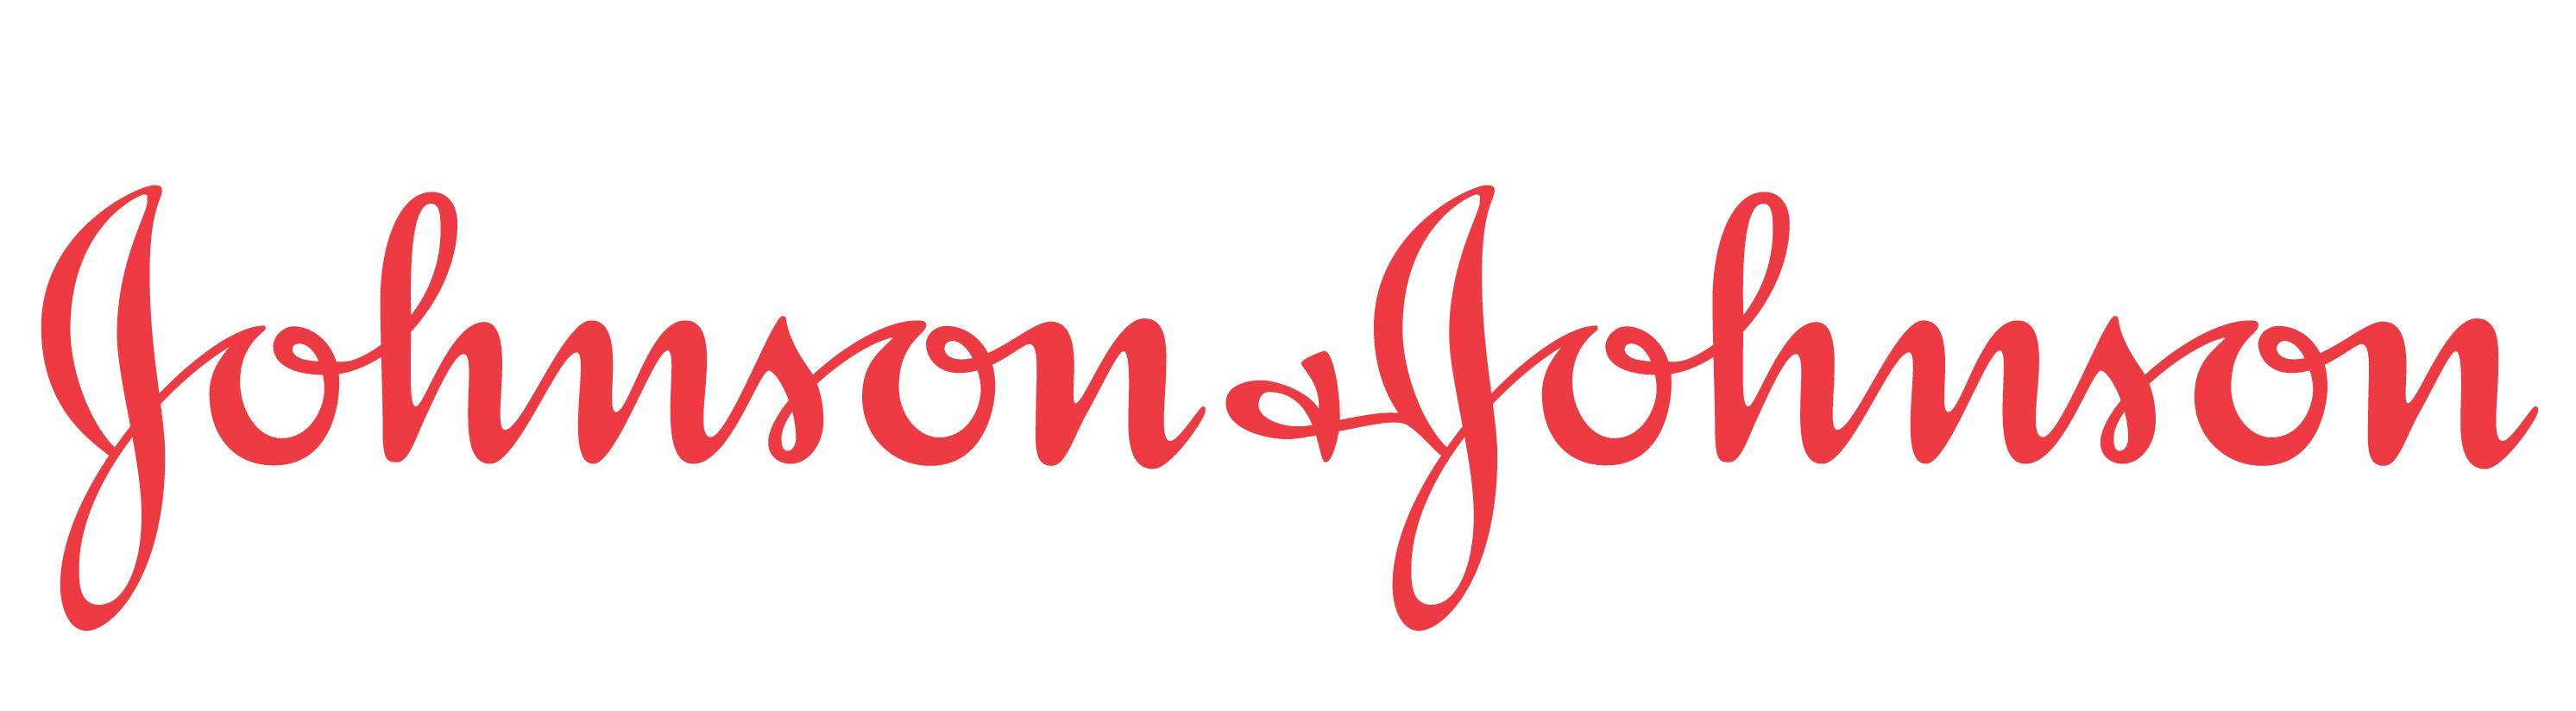 Hohnson Logo - johnson-johnson-logo - National Council